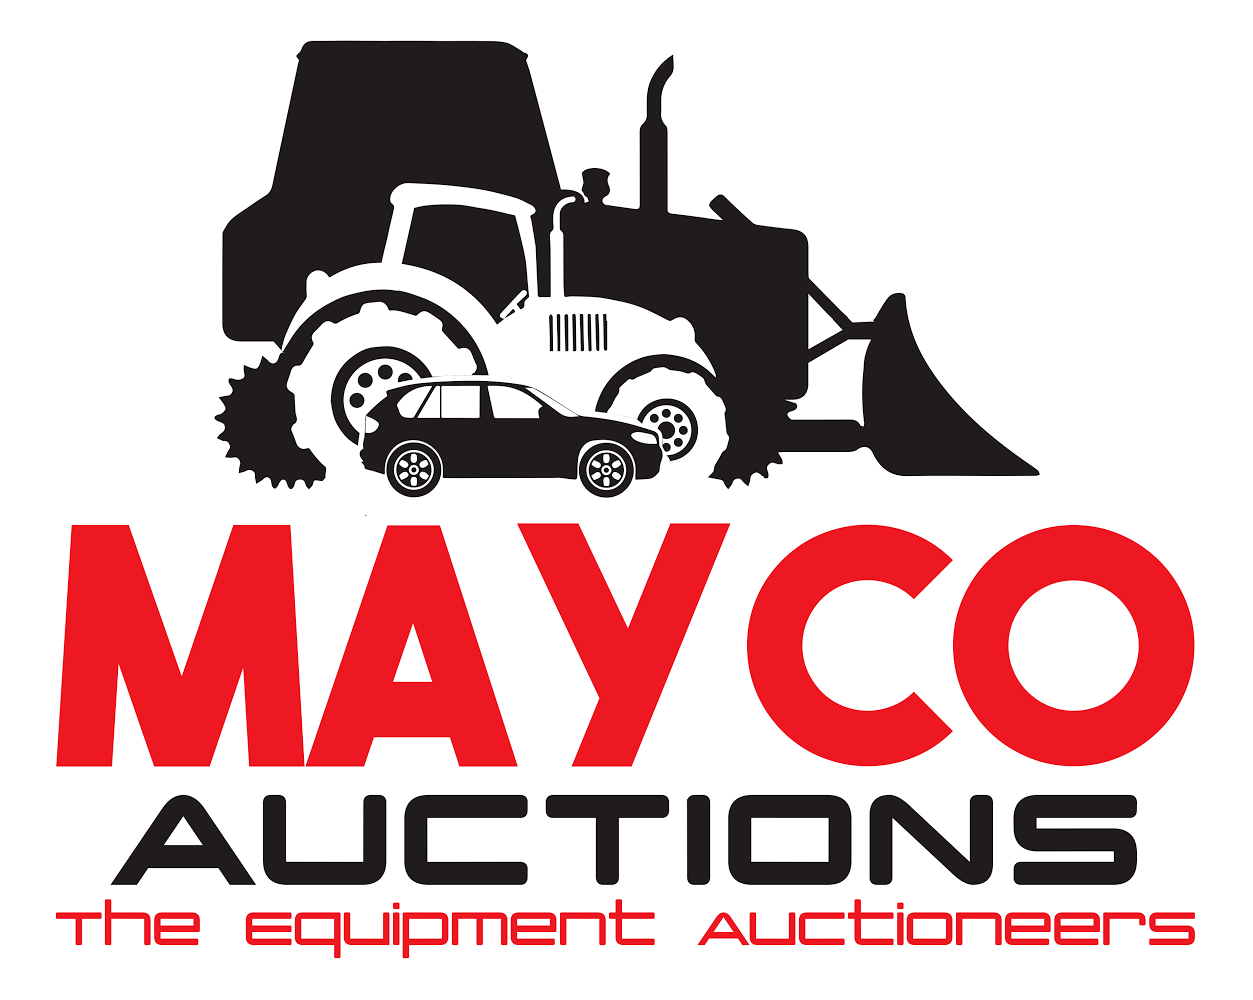 auction clipart car auction